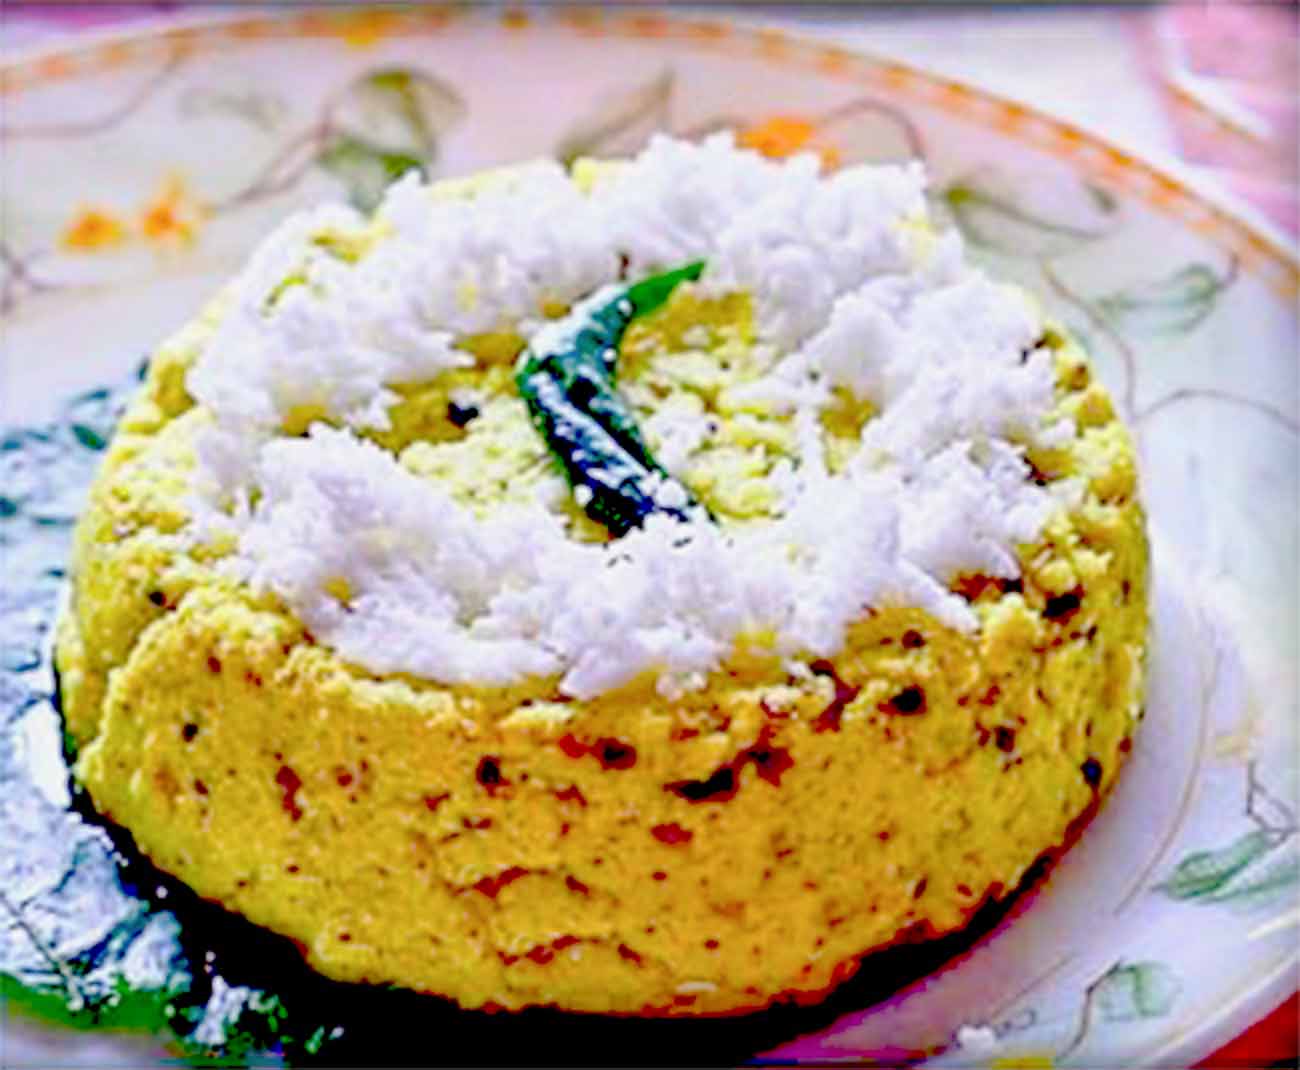 चनार पतुरी रेसिपी - Chanar Paturi Recipe